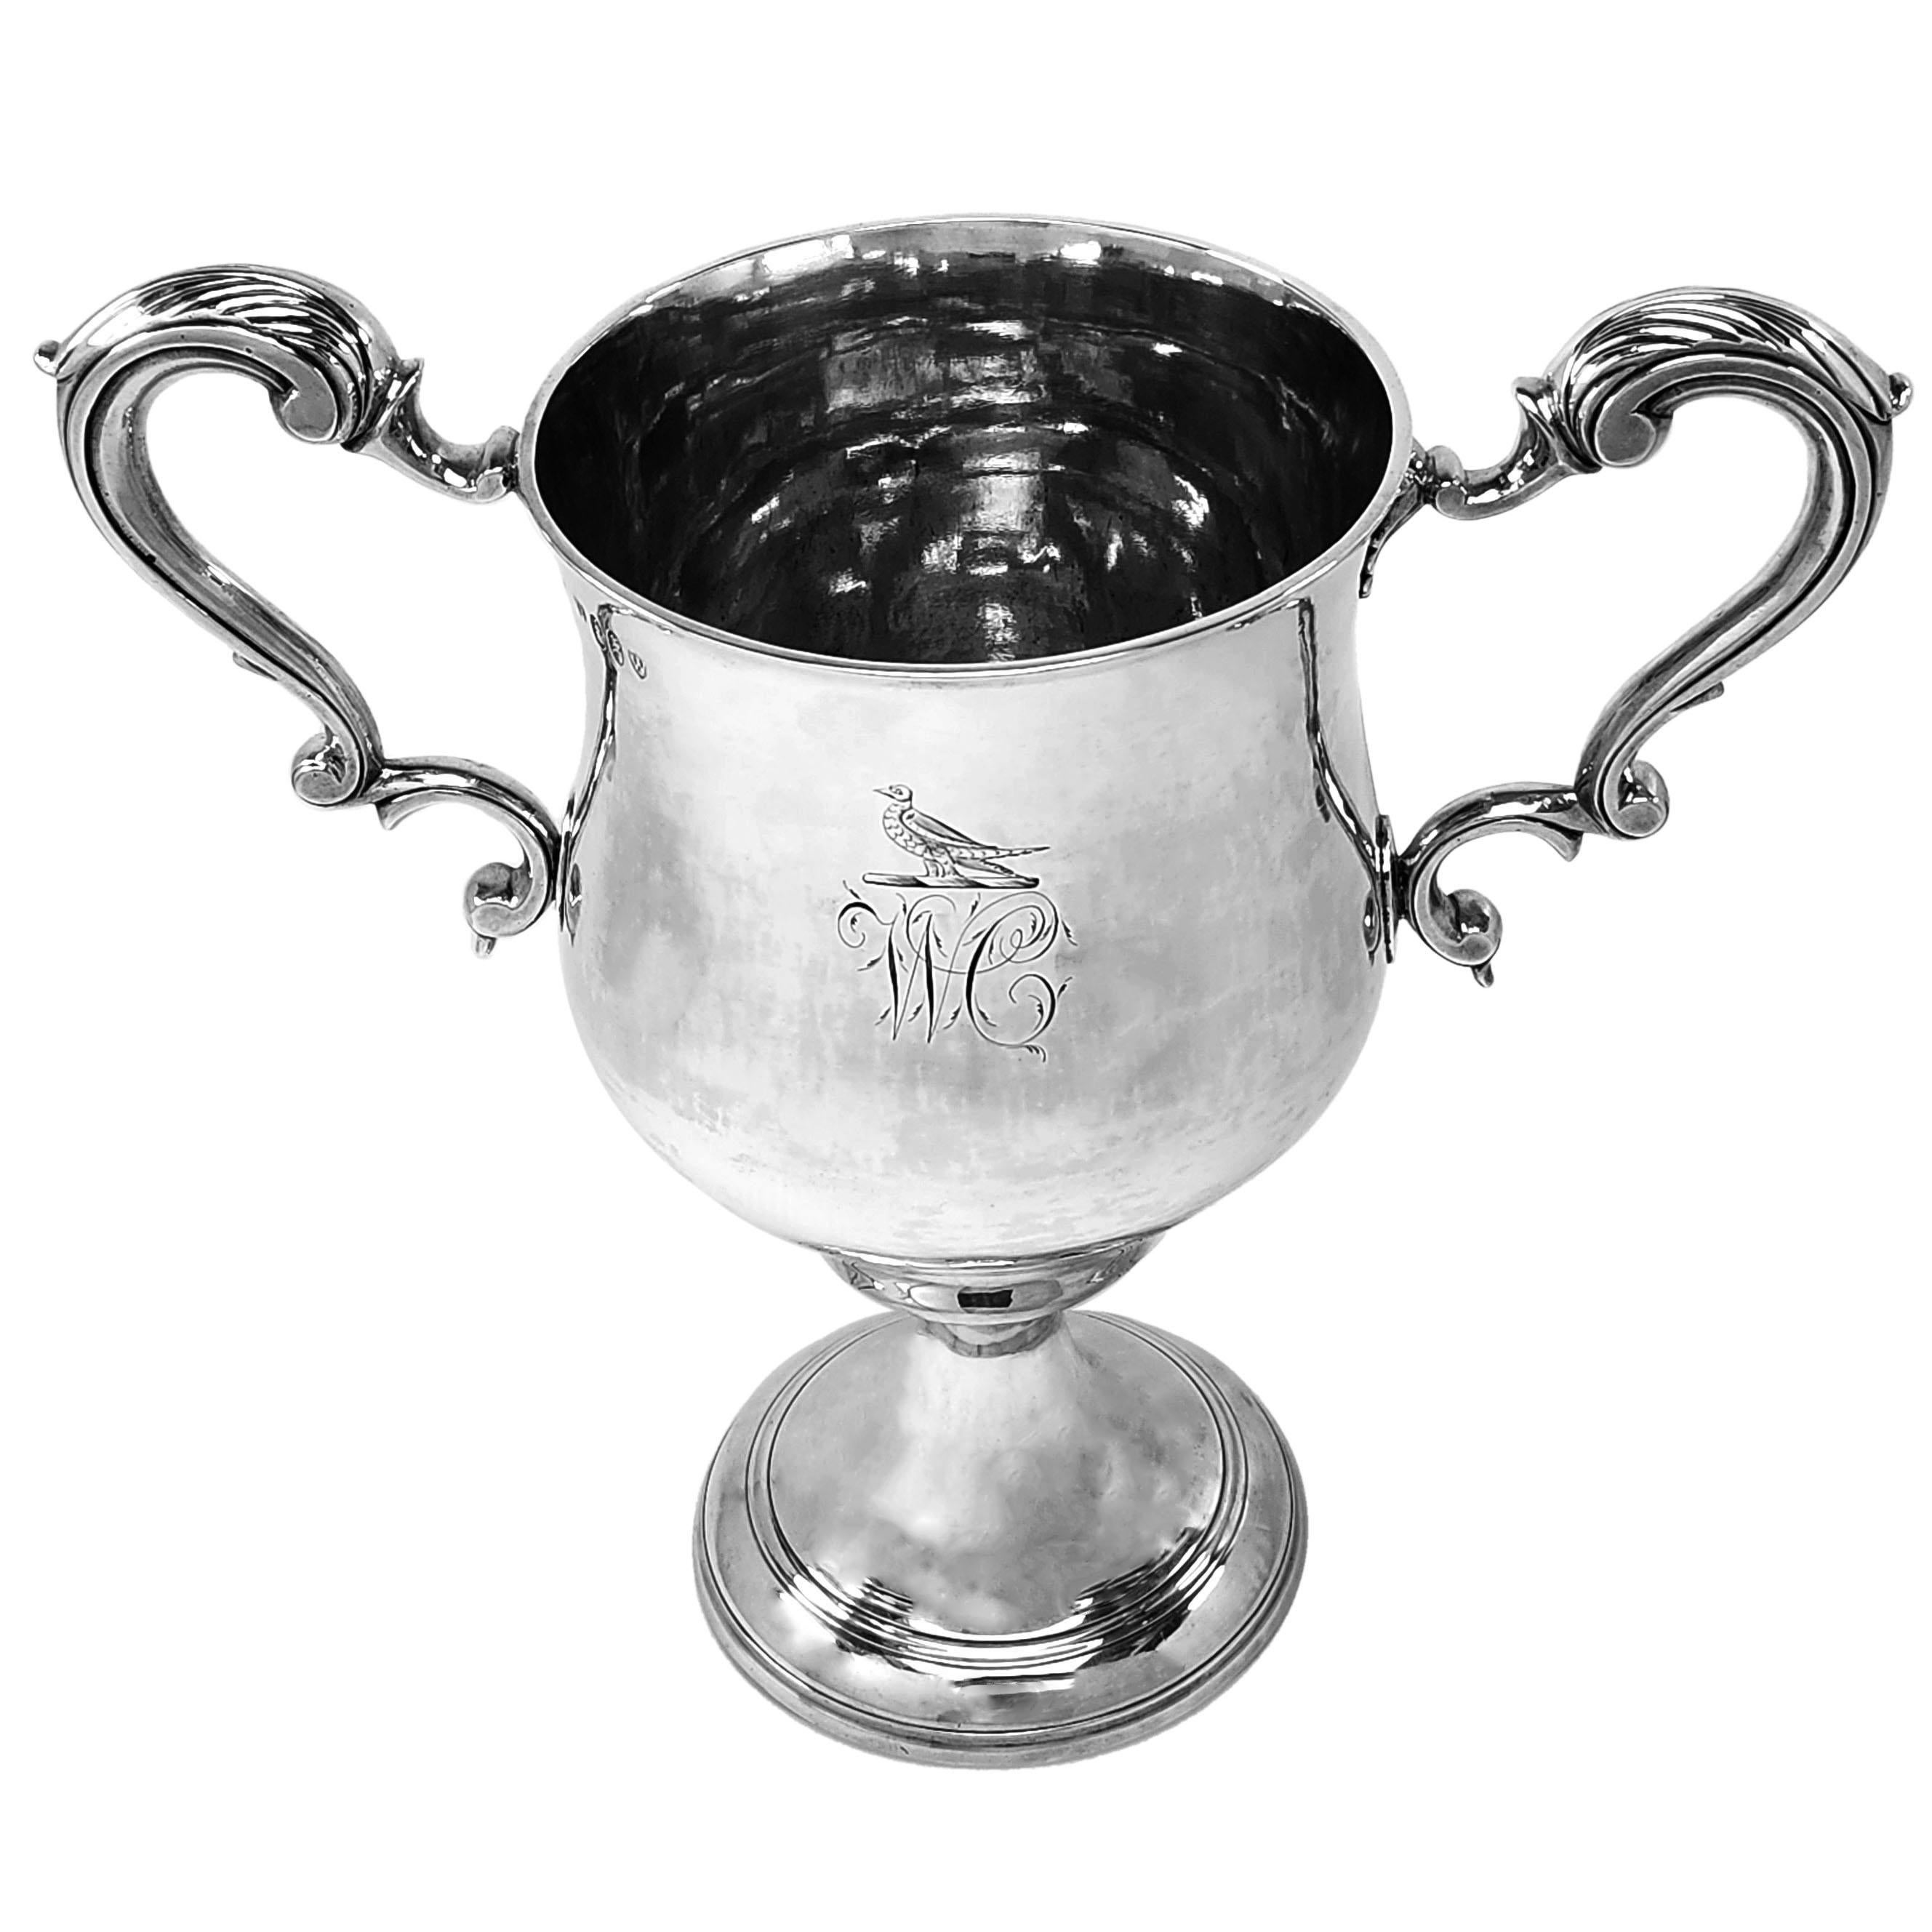 Eine elegante antike irische George III Silber Zwei Handle Cup. Der Pokal zeigt auf der einen Seite ein eingraviertes Wappen und auf der anderen Seite ein Monogramm. Der Becher hat ein Paar mit Akanthusblättern verzierte Griffe.

1769 in Dublin,